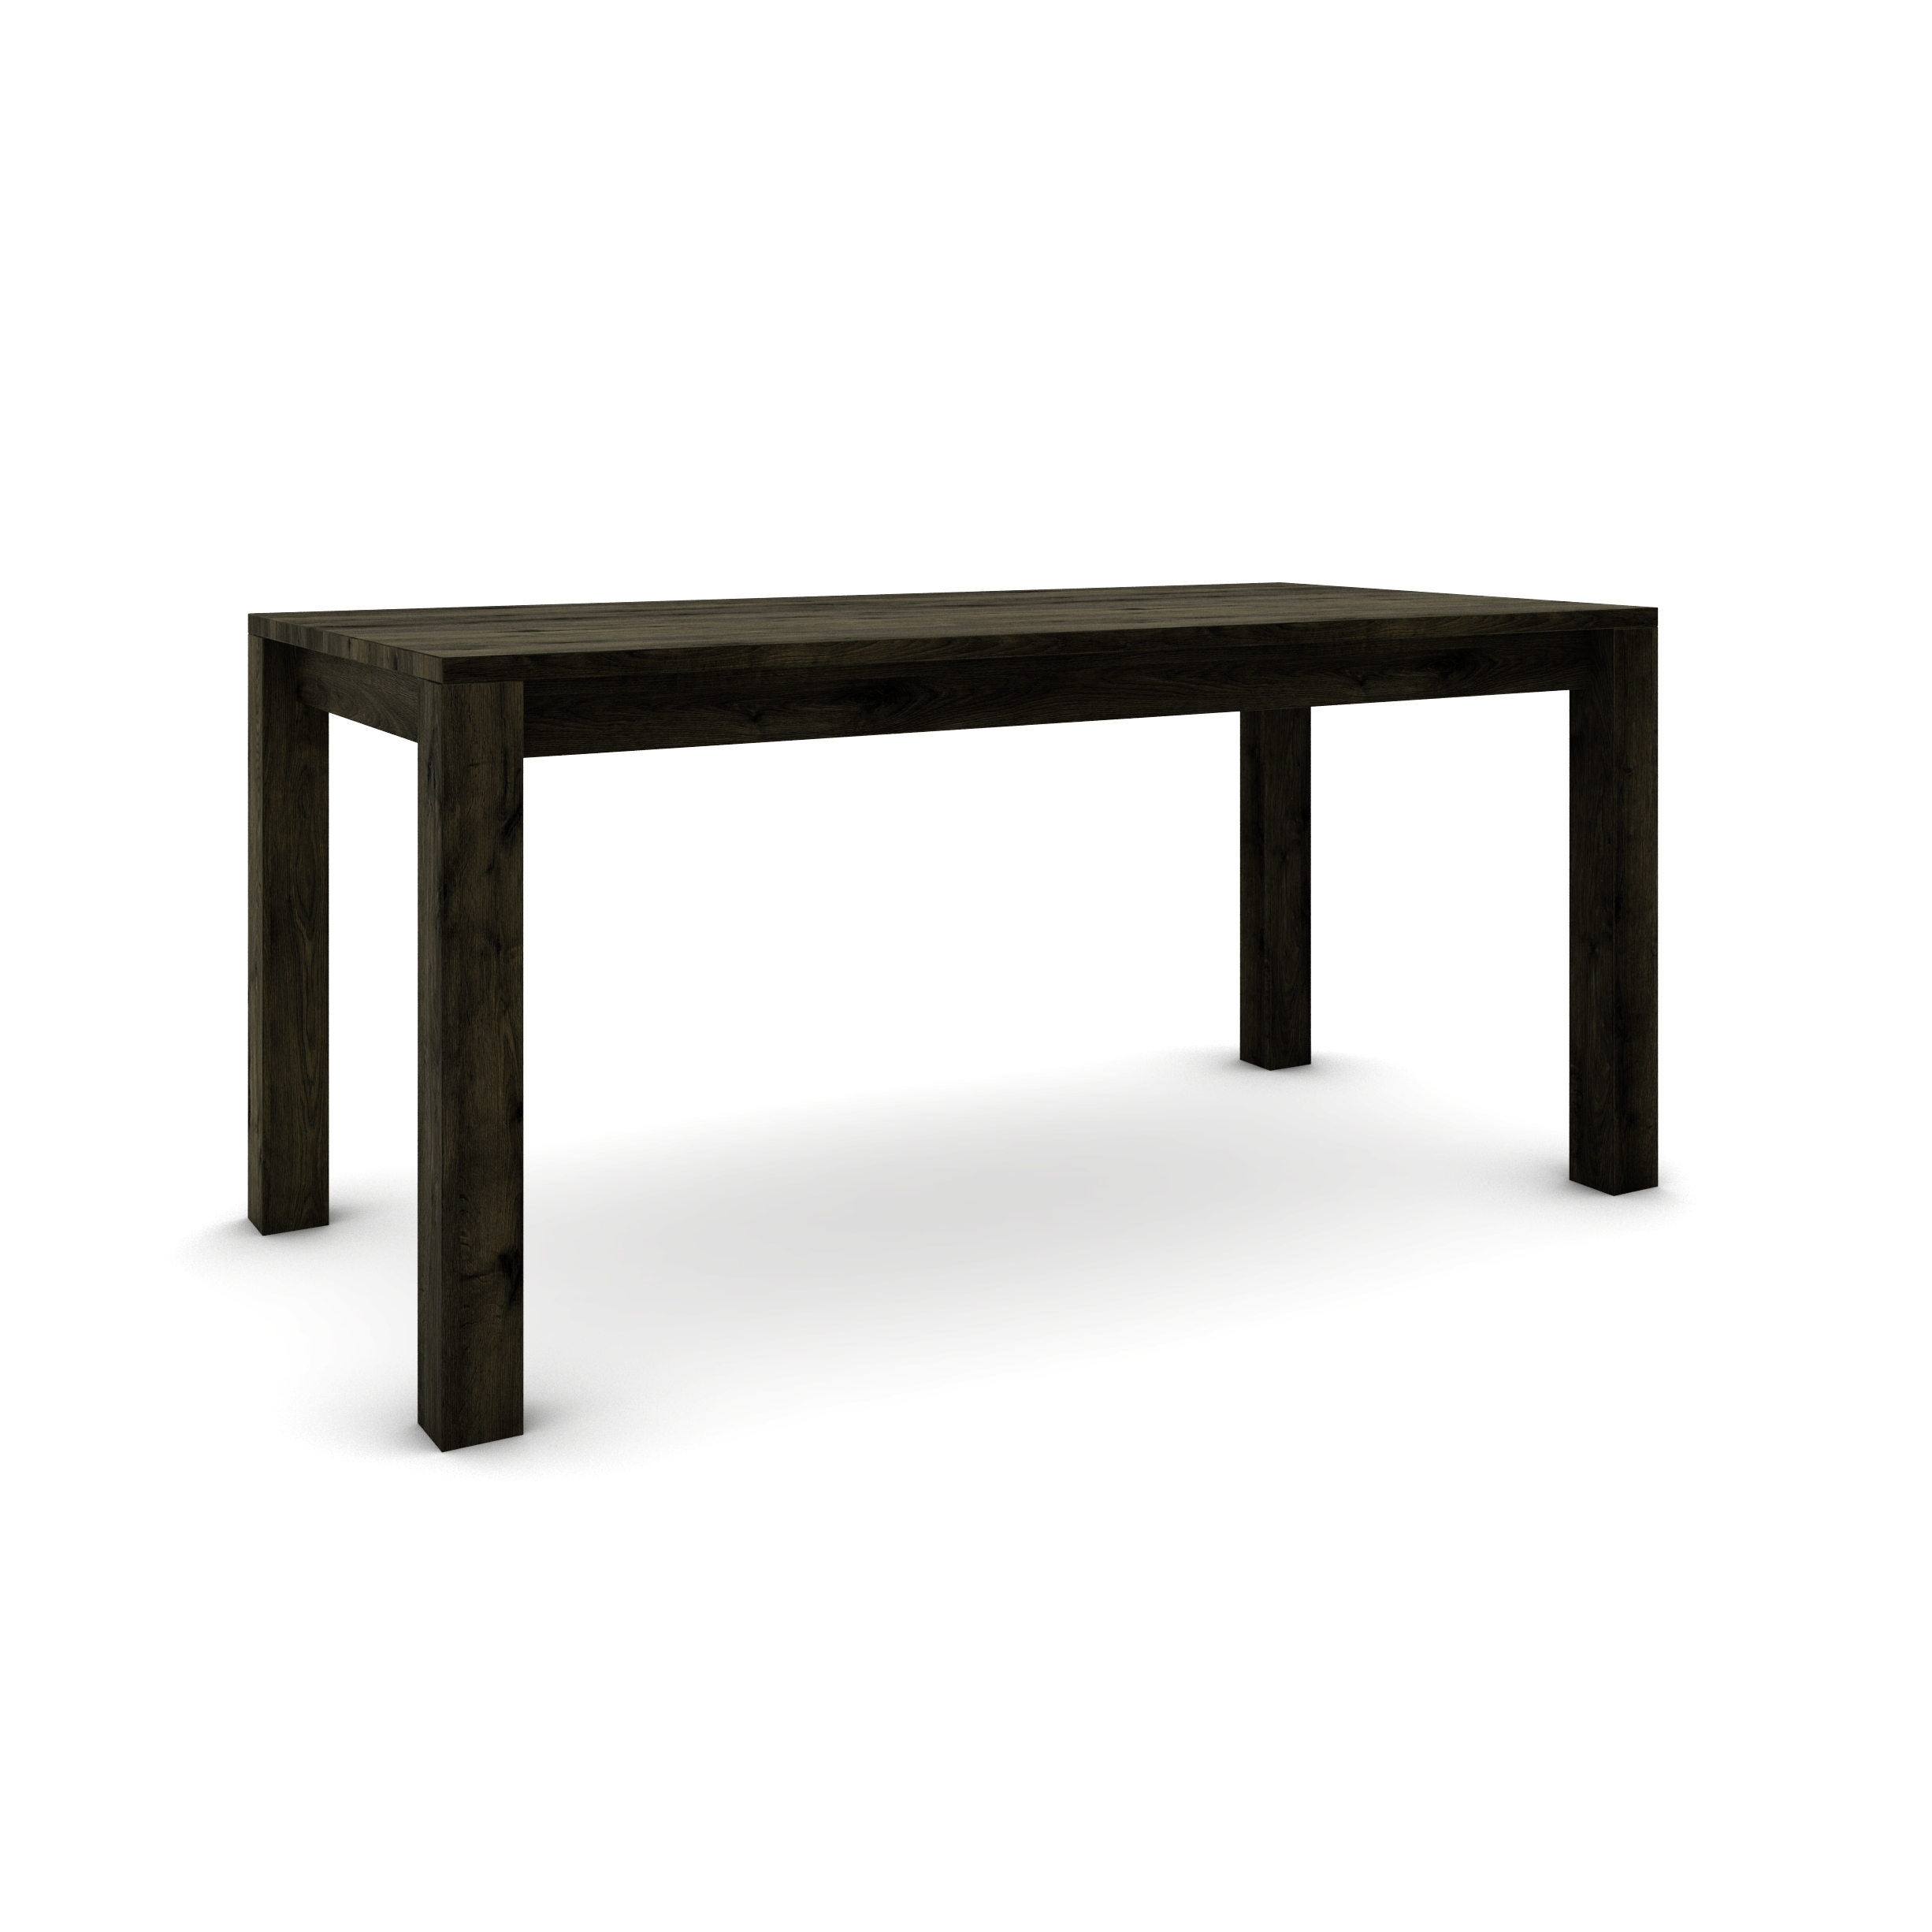 Dubový stôl 160 x 80 cm , čierny so strieborným efektom